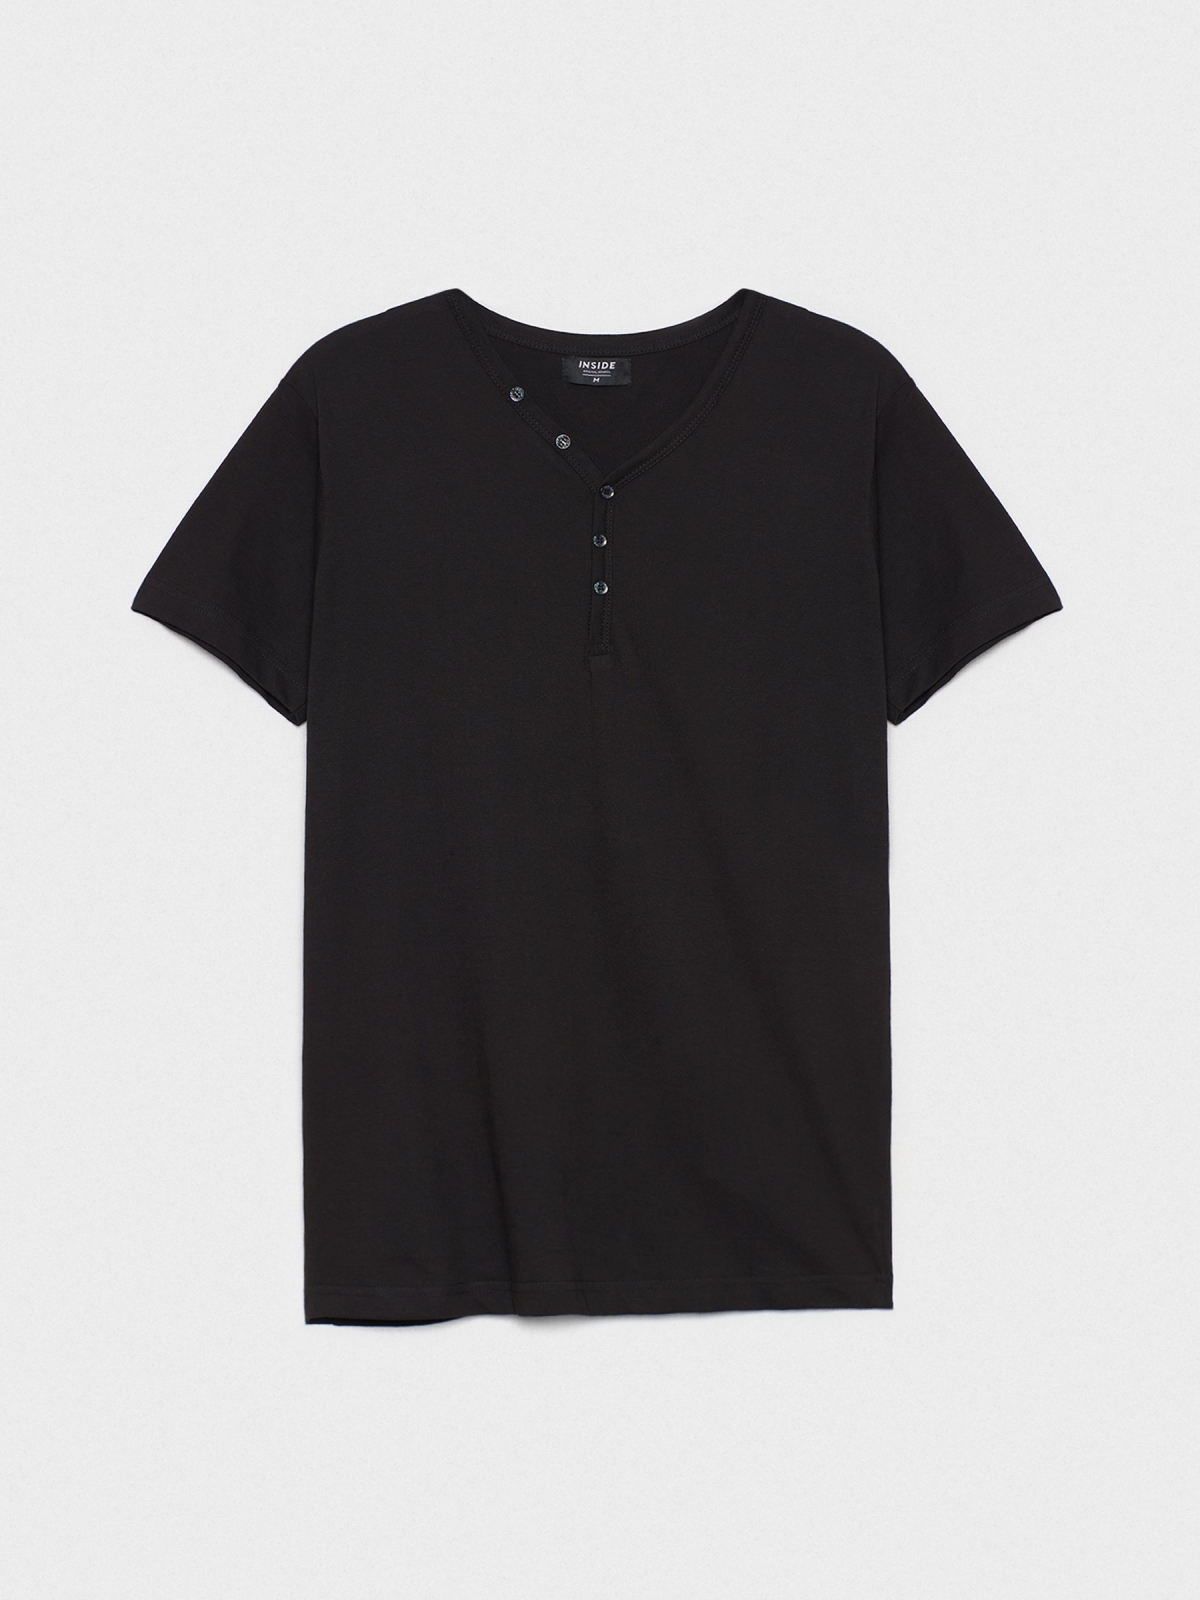  Camiseta cuello con botones negro